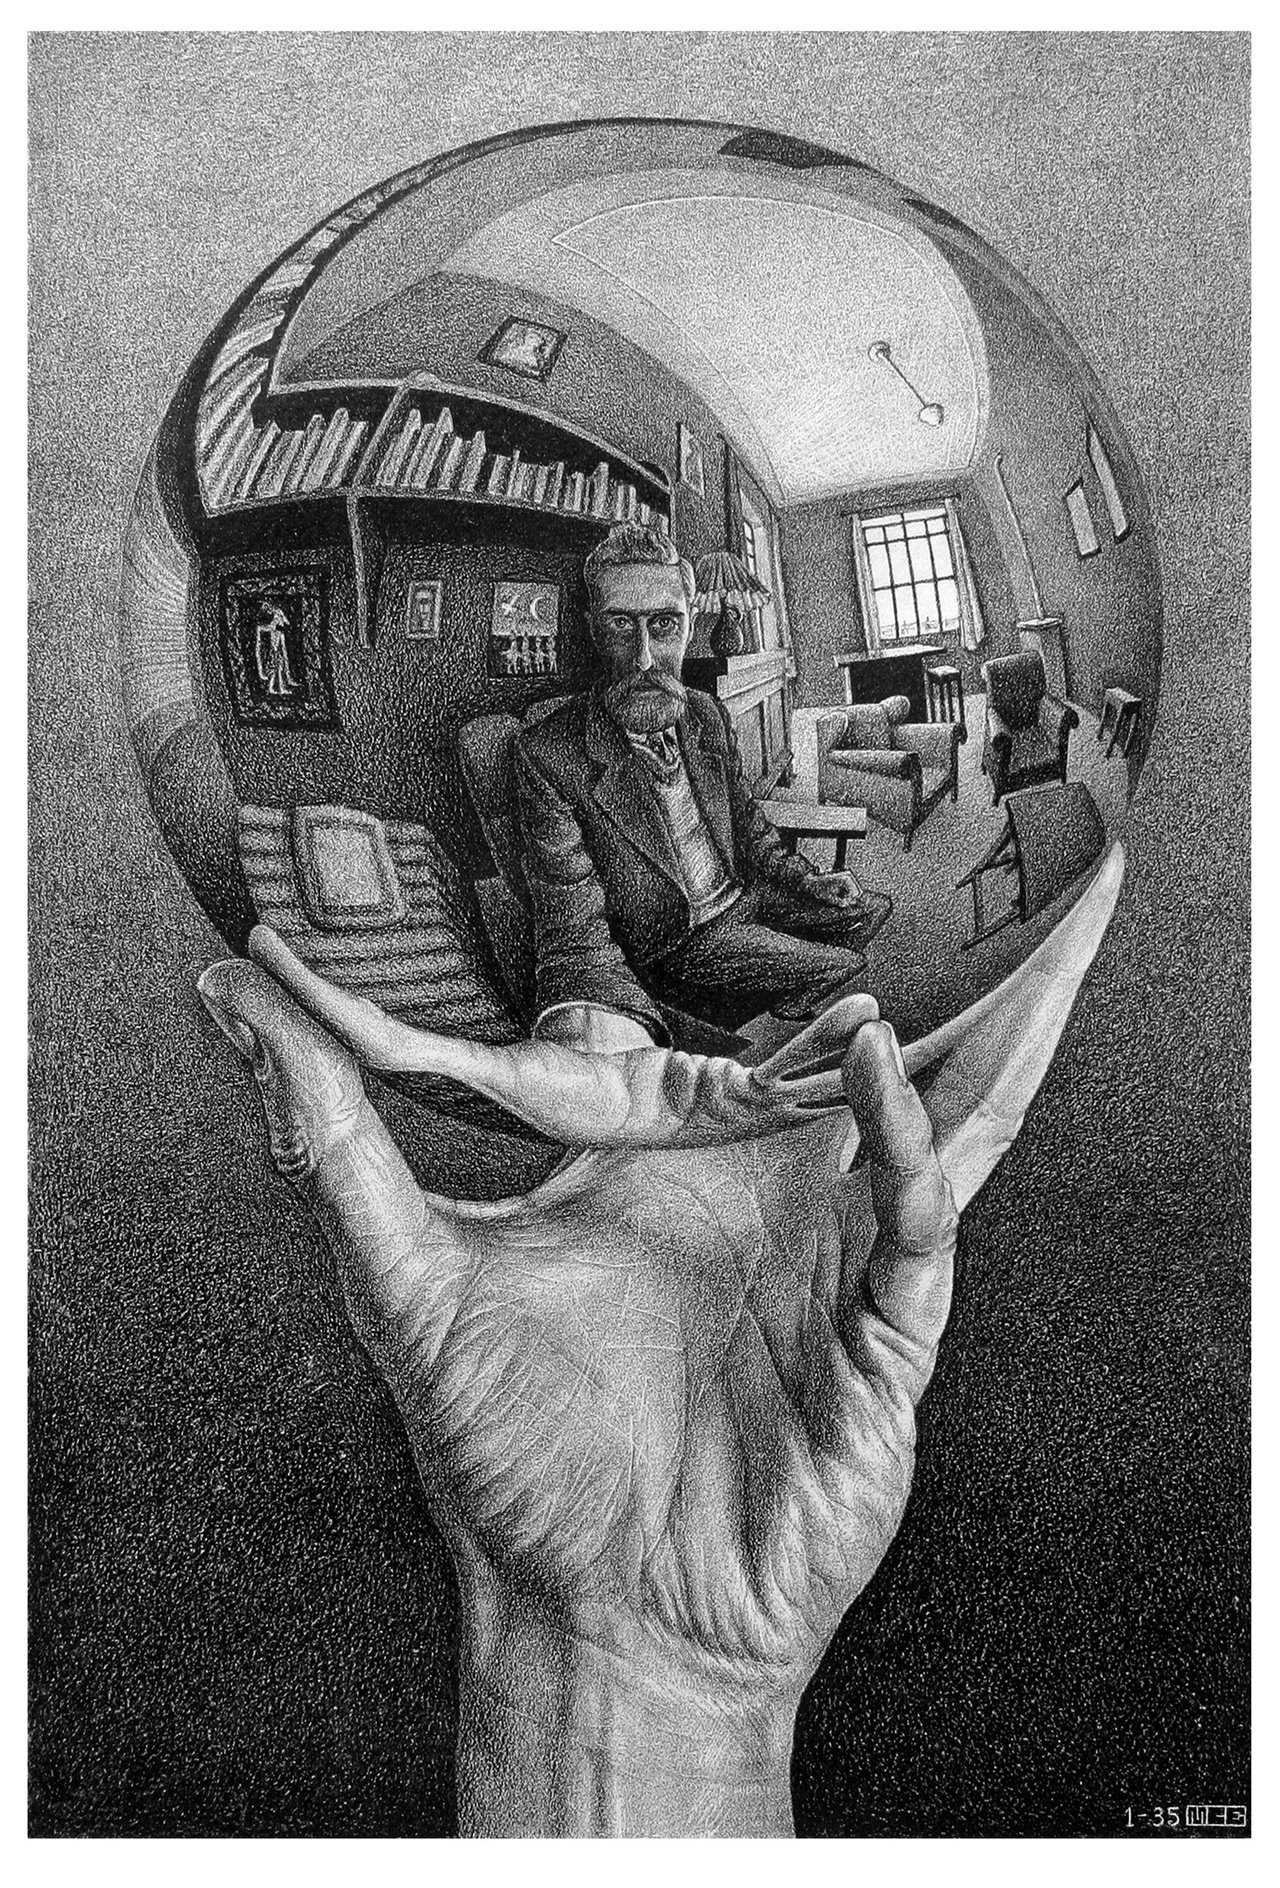 "Mano con esfera reflectante", 1935.